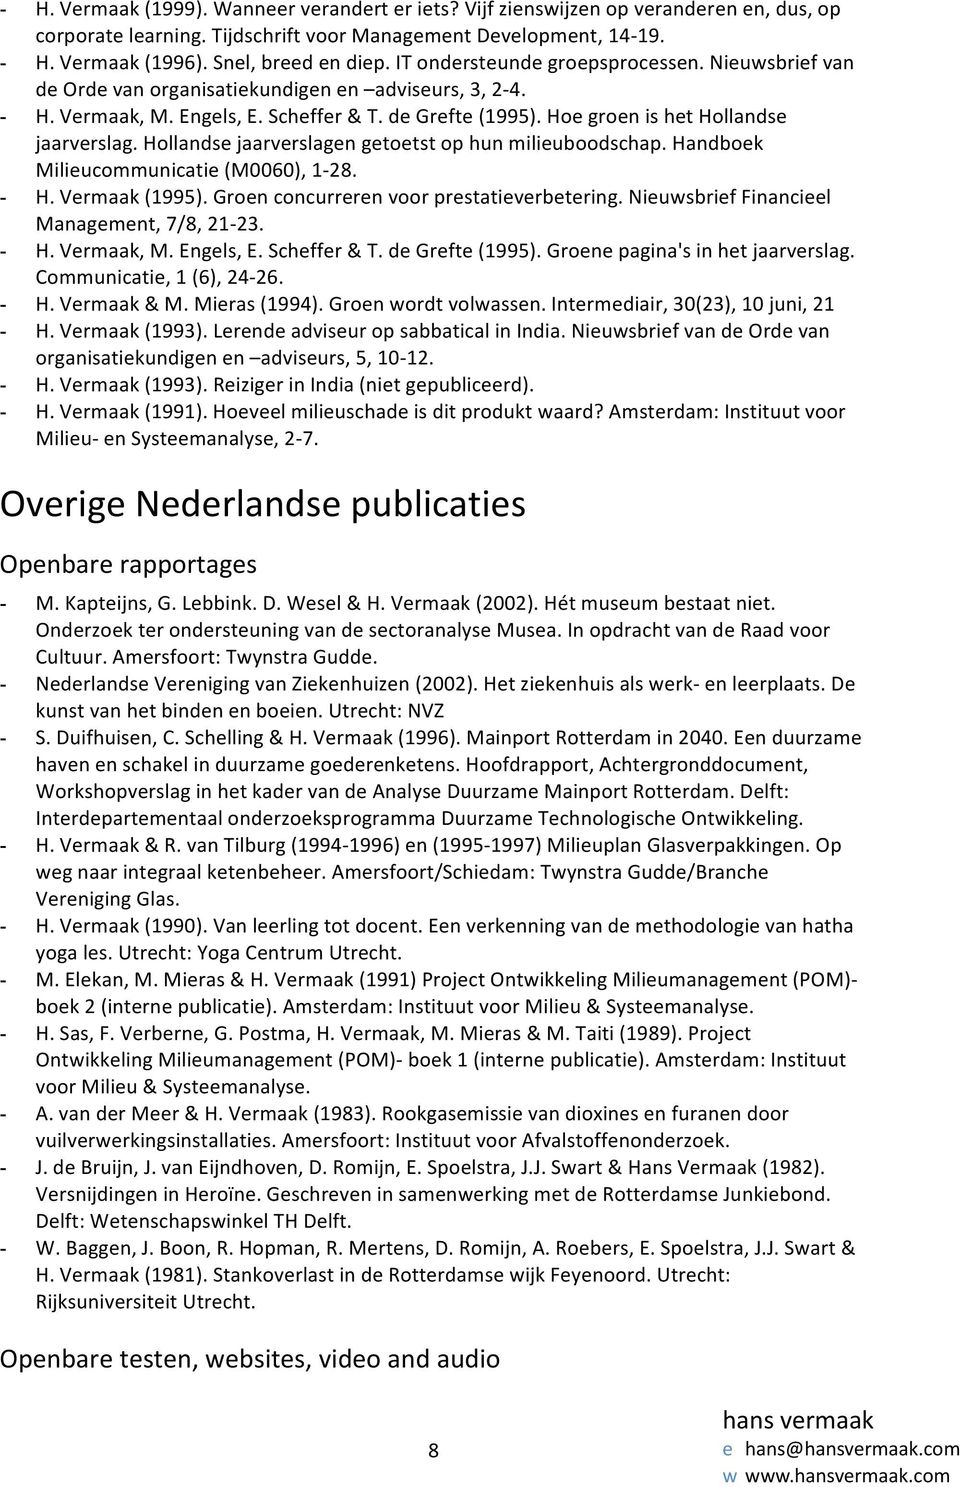 Hoe groen is het Hollandse jaarverslag. Hollandse jaarverslagen getoetst op hun milieuboodschap. Handboek Milieucommunicatie (M0060), 1-28. - H. Vermaak (1995).